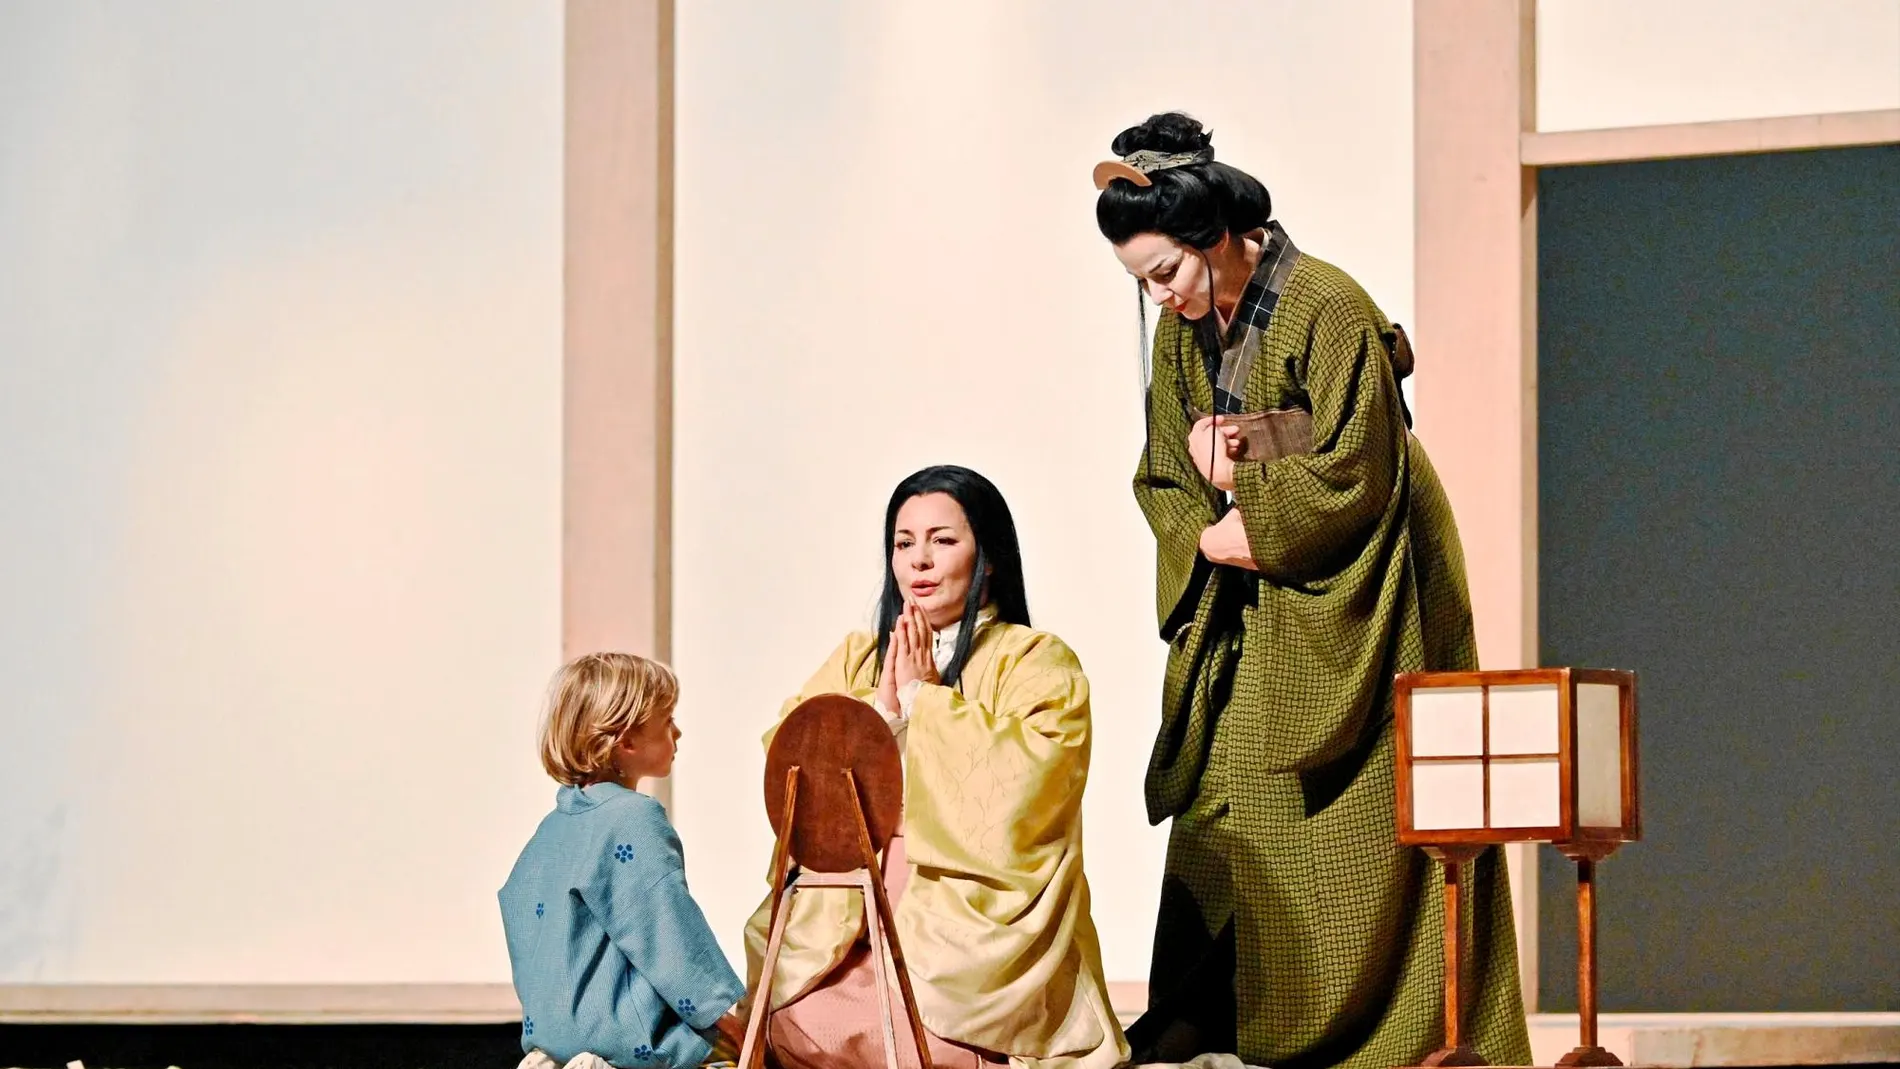 La soprano Lianna Haroutounian debuta en el Gran Teatro del Liceo con el rol de Cio Cio San, la absoluta protagonista de «Madama Butterfly» de Puccini